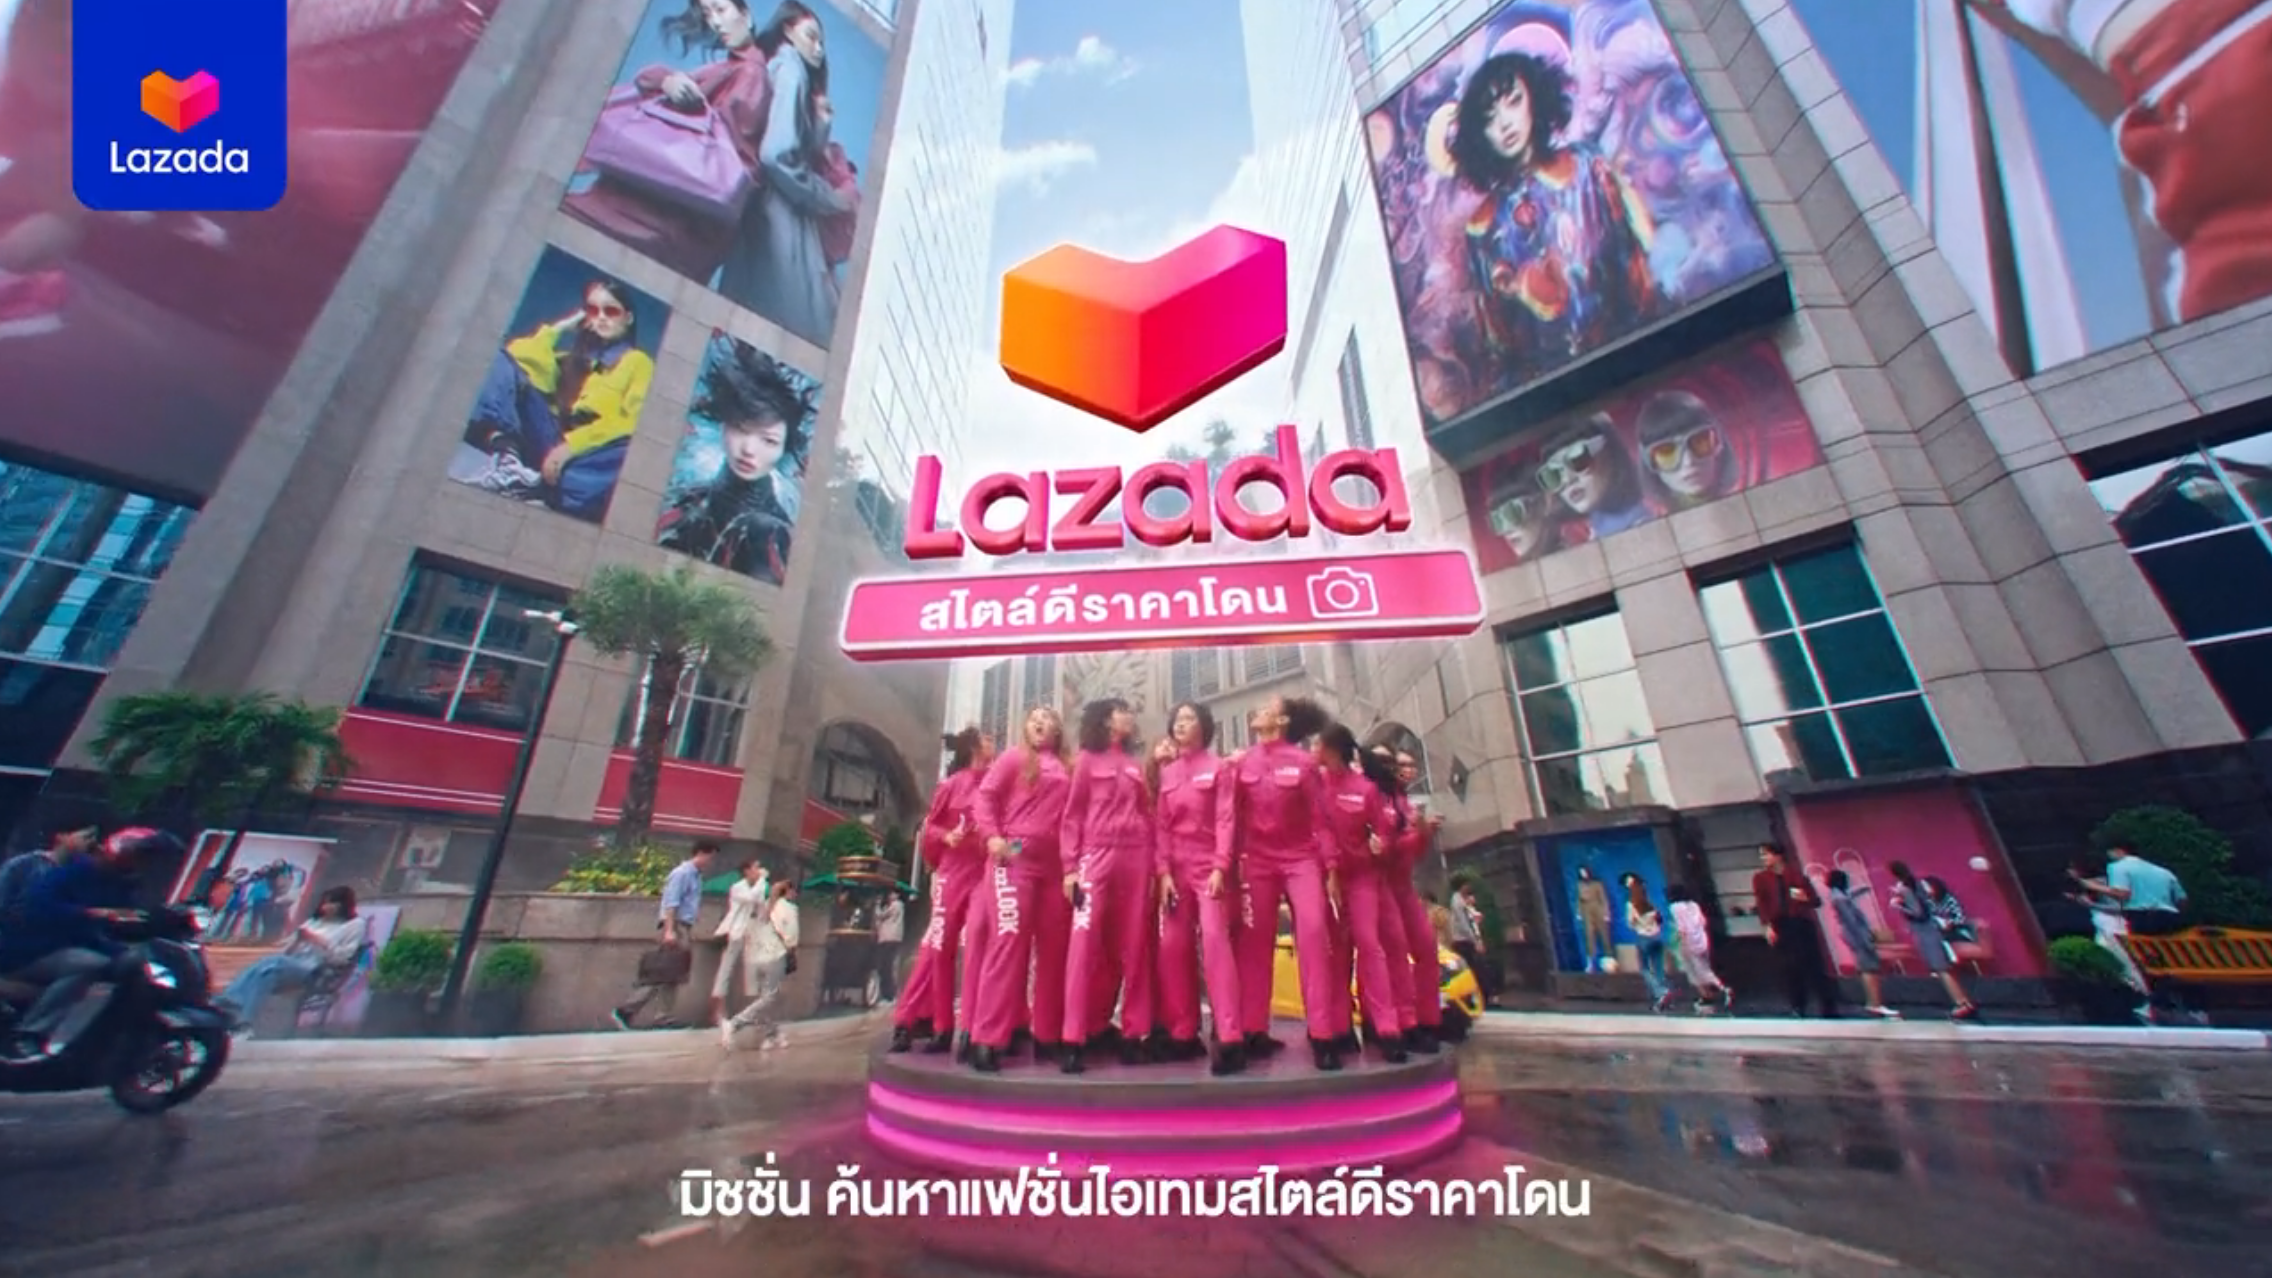 Lazada Thailand laksana perubahan besar, CEO bakal berundur